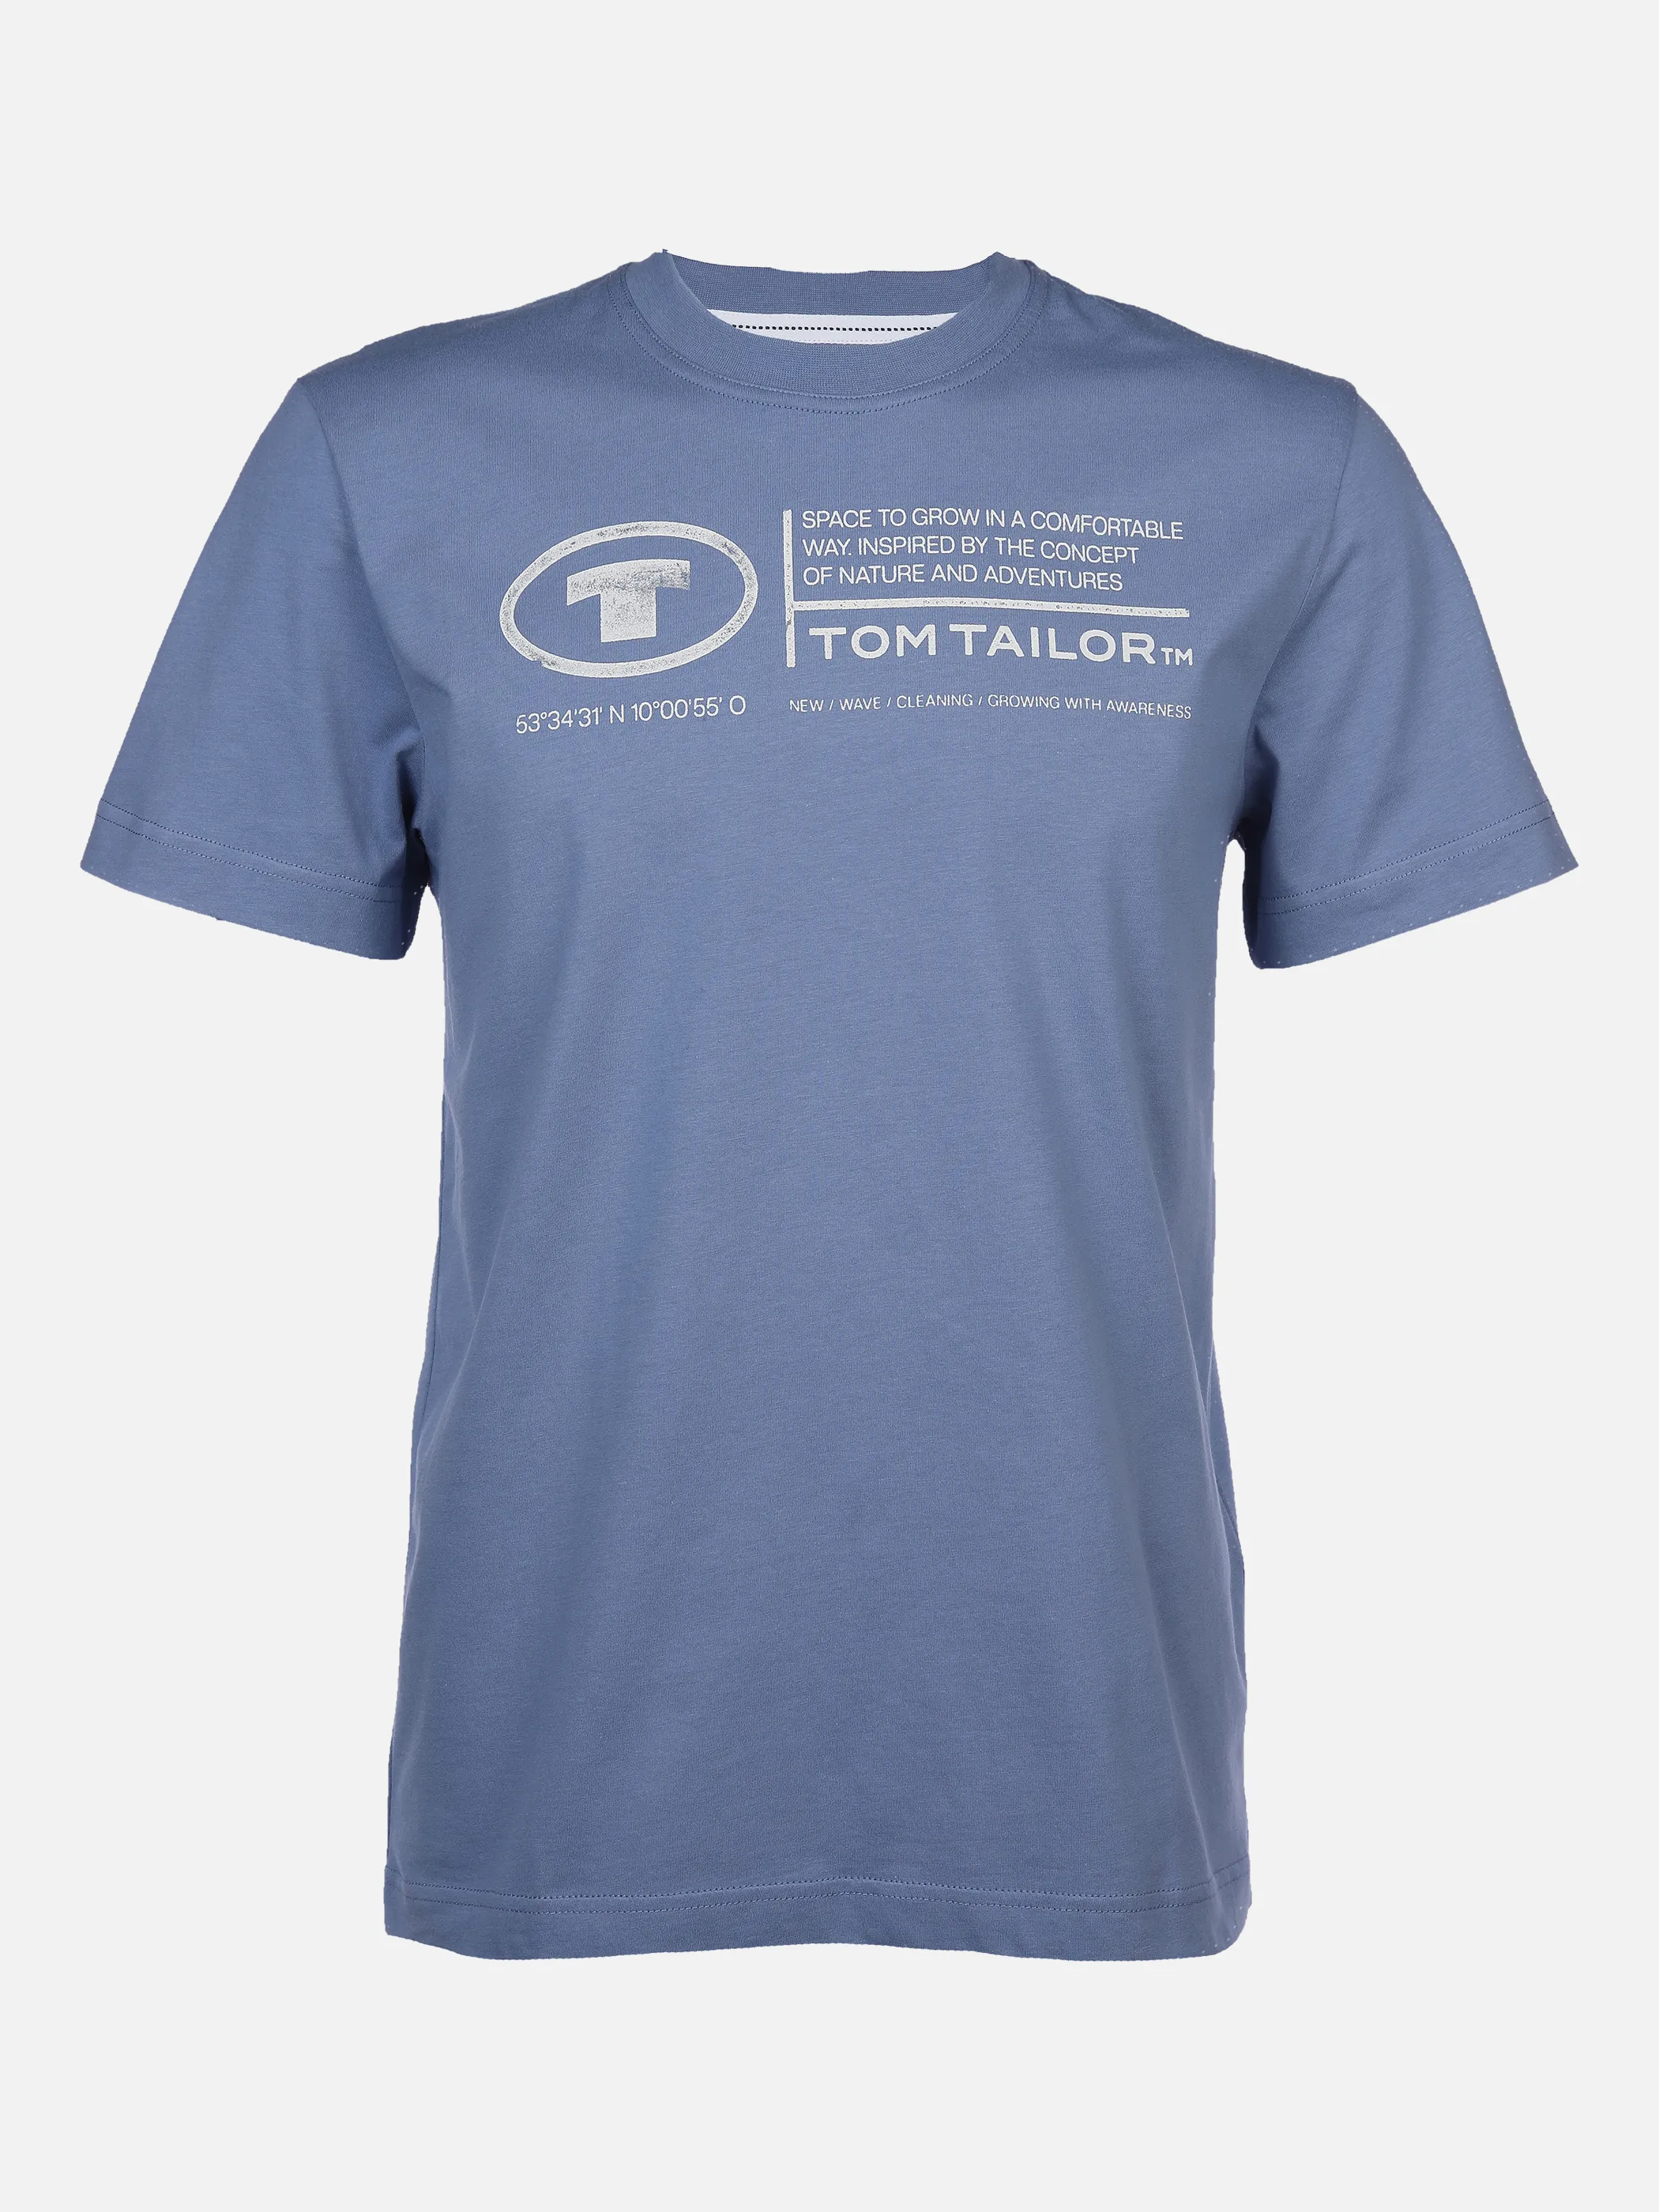 Tom Tailor 1035611 NOS printed crewneck t-shirt Blau 874939 12364 1